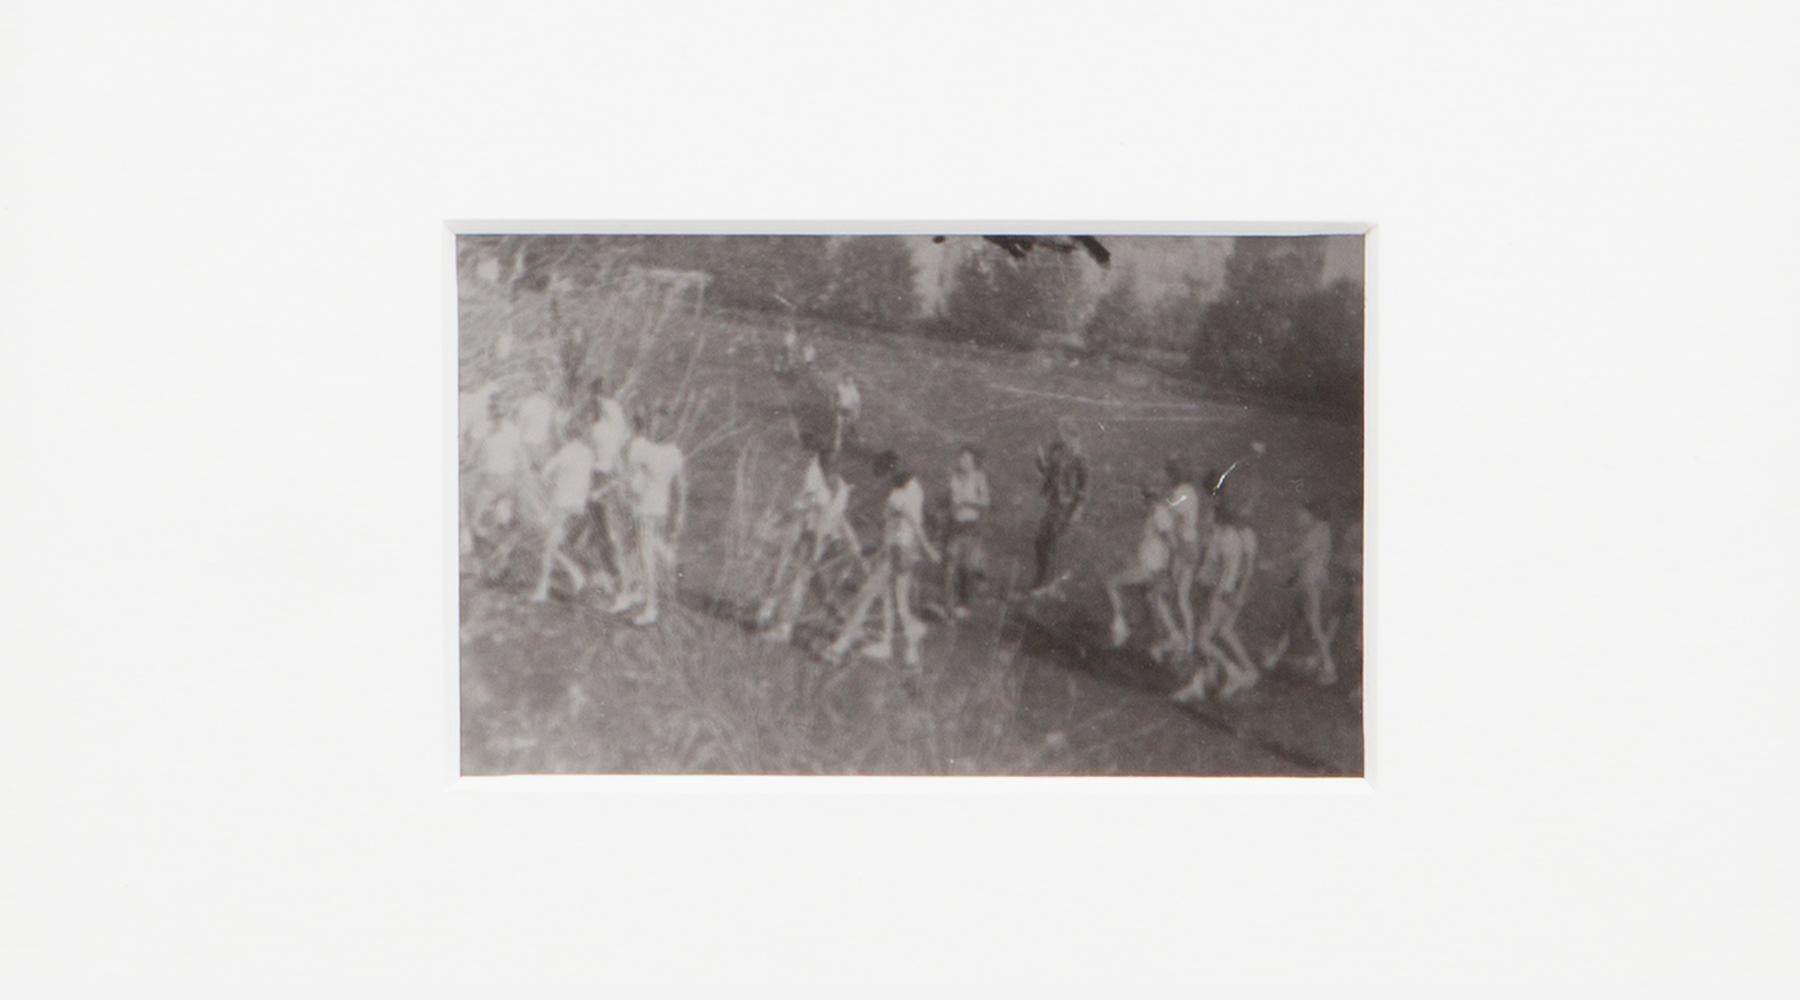 Original Miroslav Tichý s/w Fotografie von 1970. Einzigartiger Vintage-Gelatinesilberdruck. Inklusive schwarzem Holzrahmen in H 20,5 / B 25,5 cm. Dieses Motiv beschreibt Frauen, die während einer Gymnastikstunde im Park fotografiert